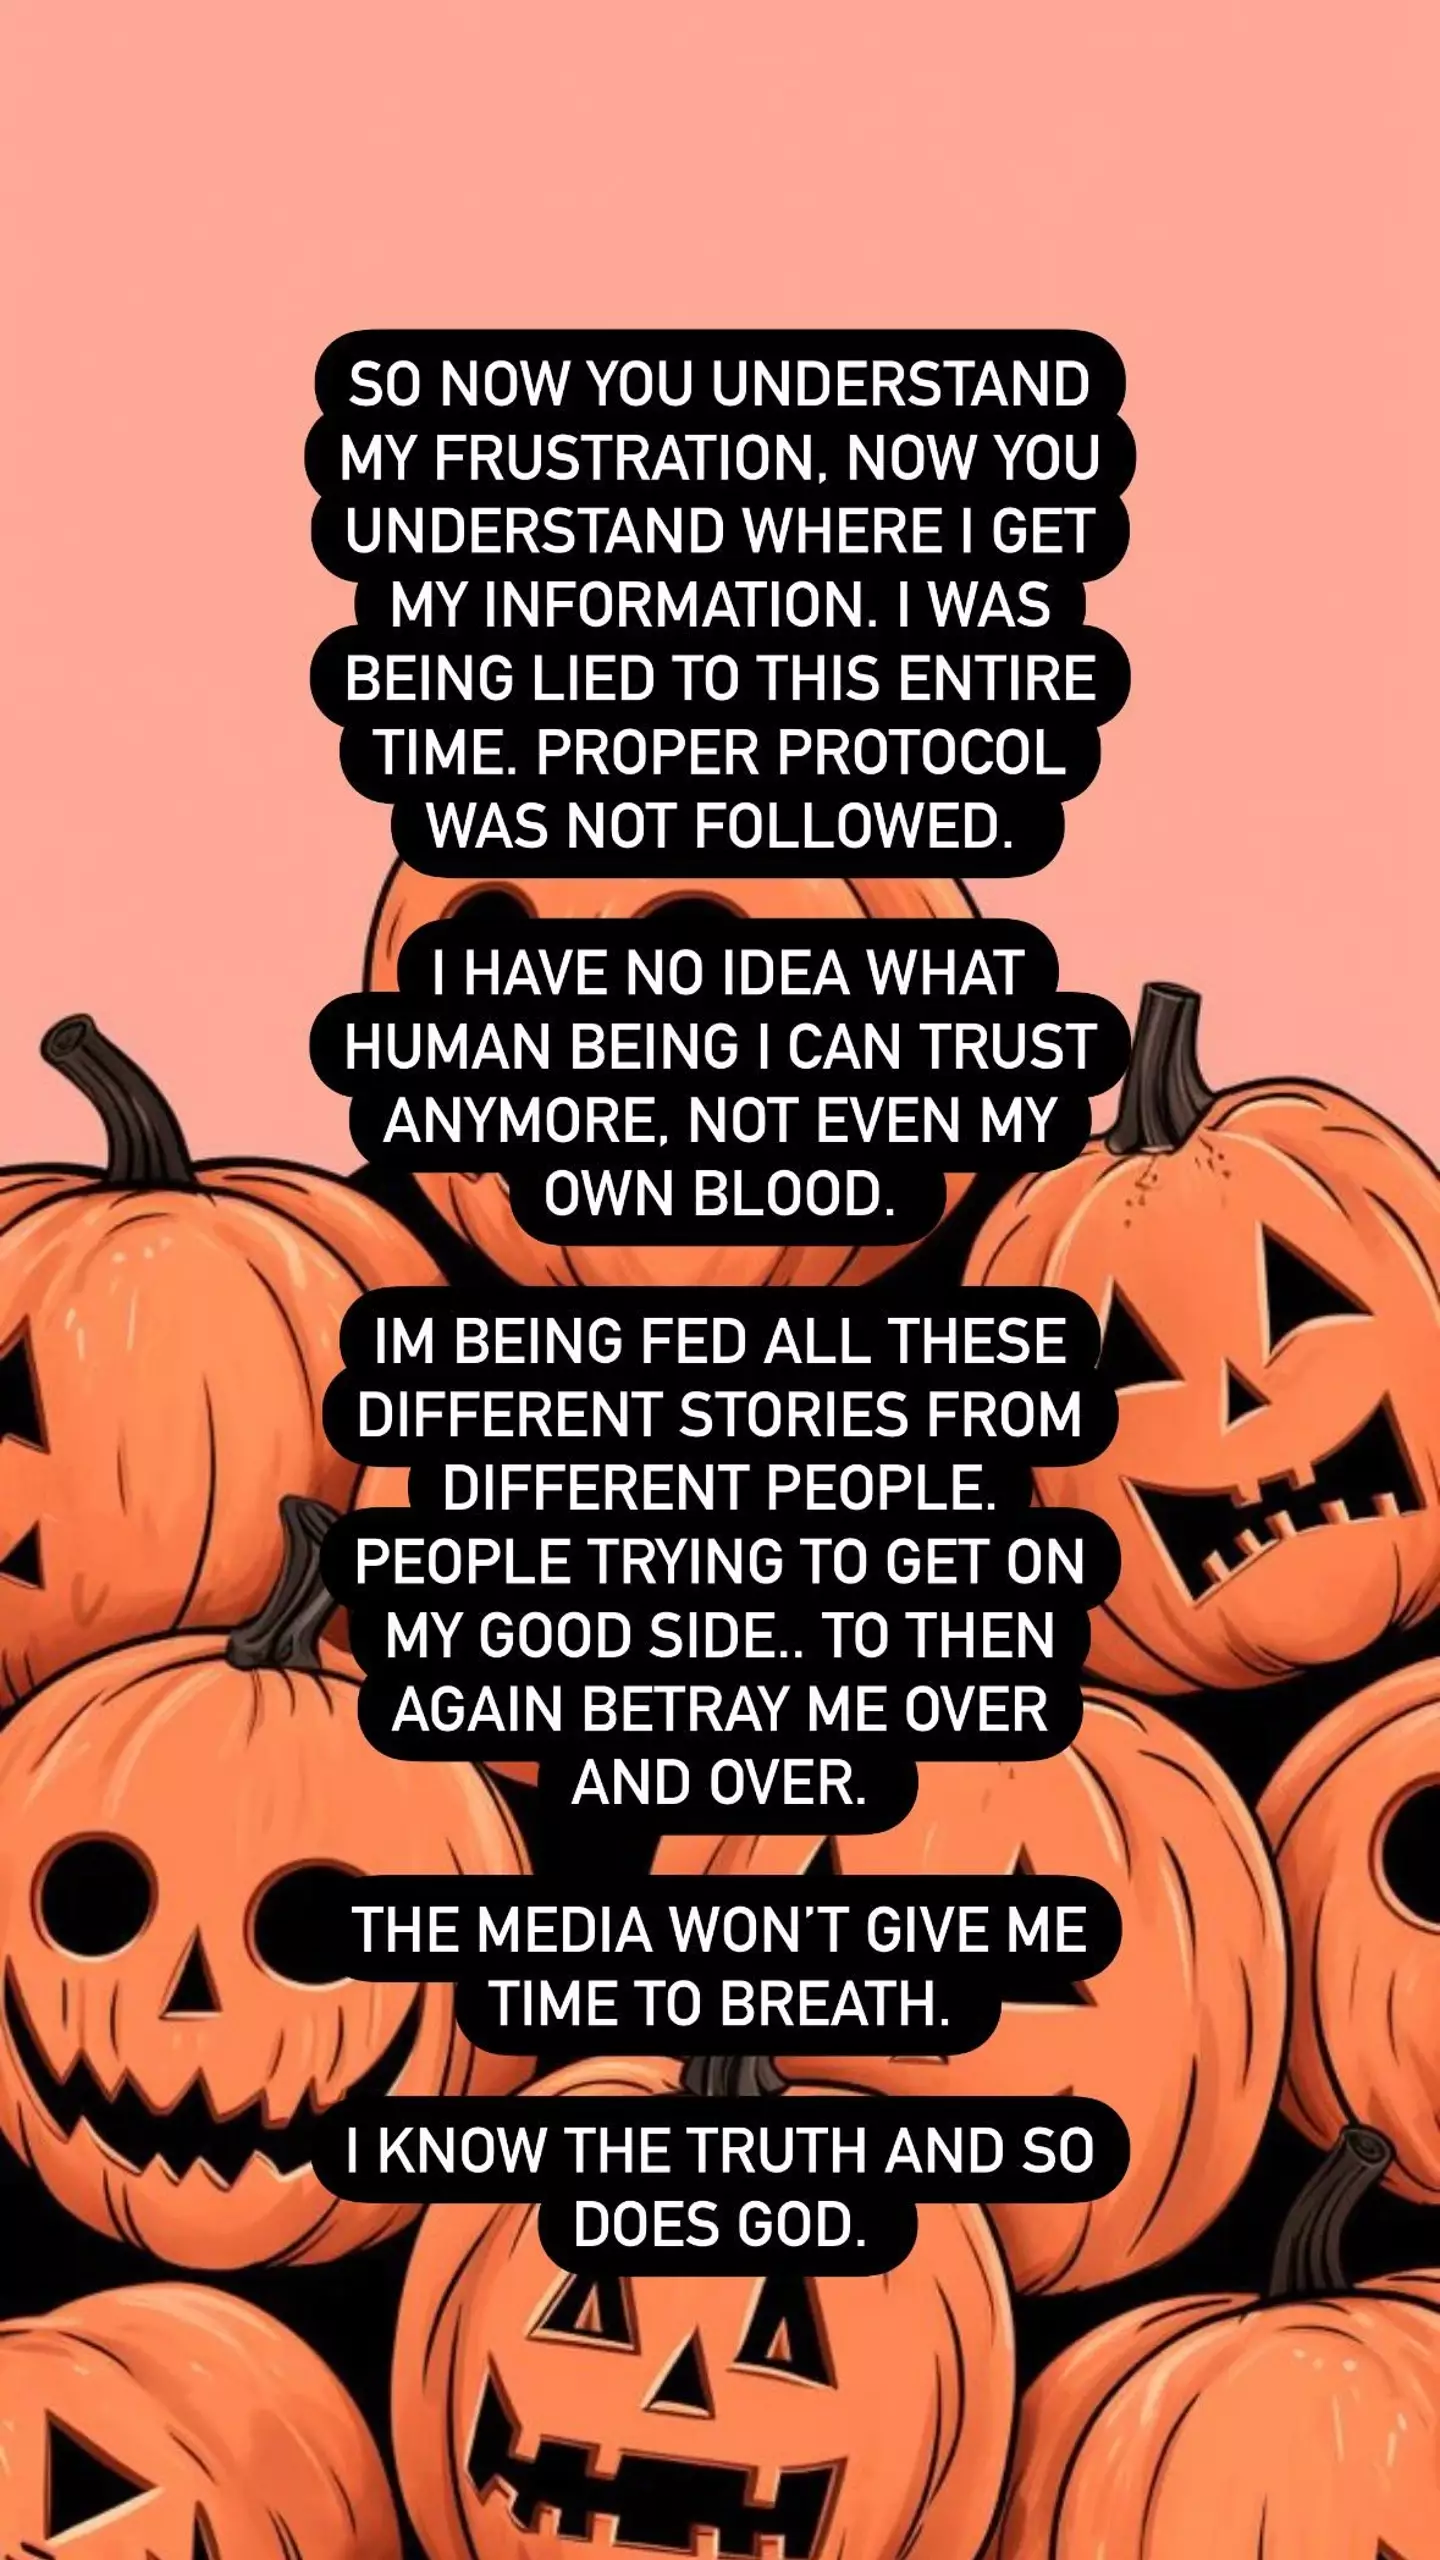 Jenelle's final Instagram story statement.